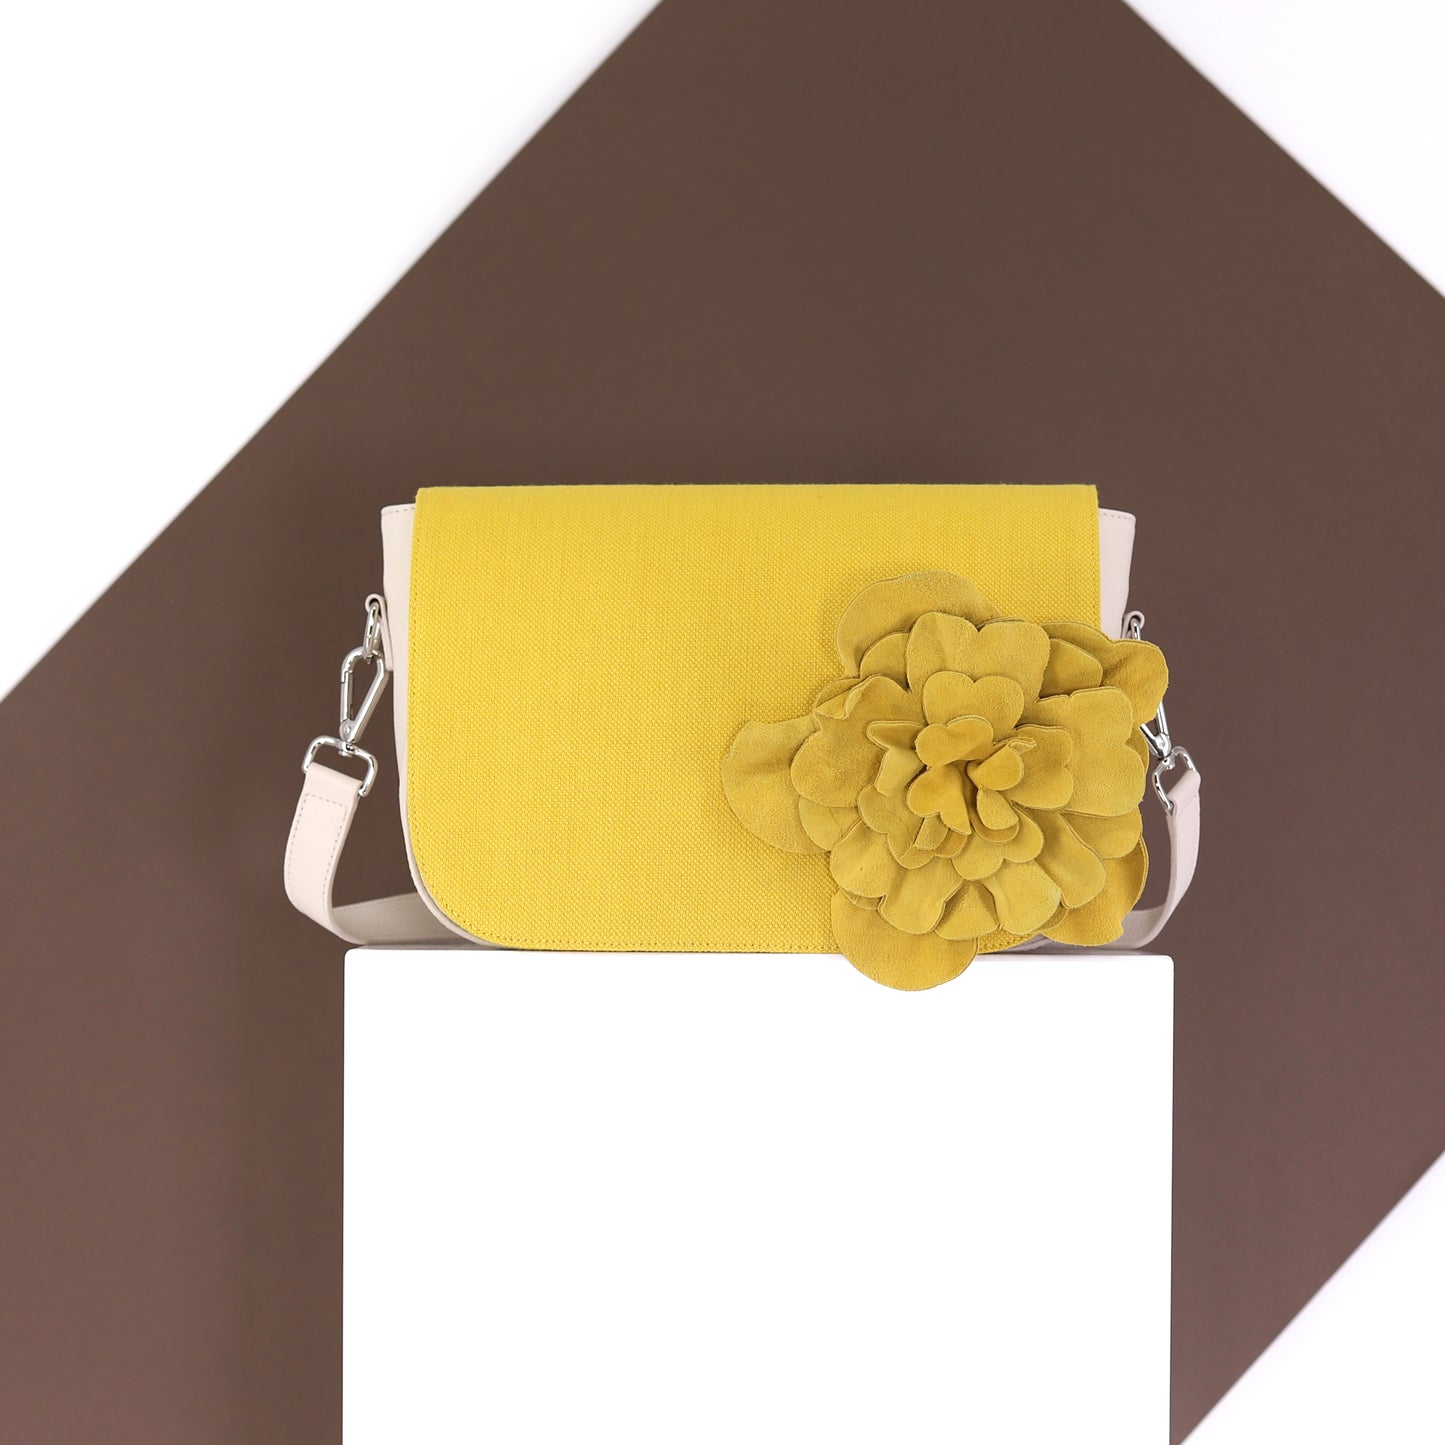 EMILIA Handtasche aus echtem Leder in beige,  medium